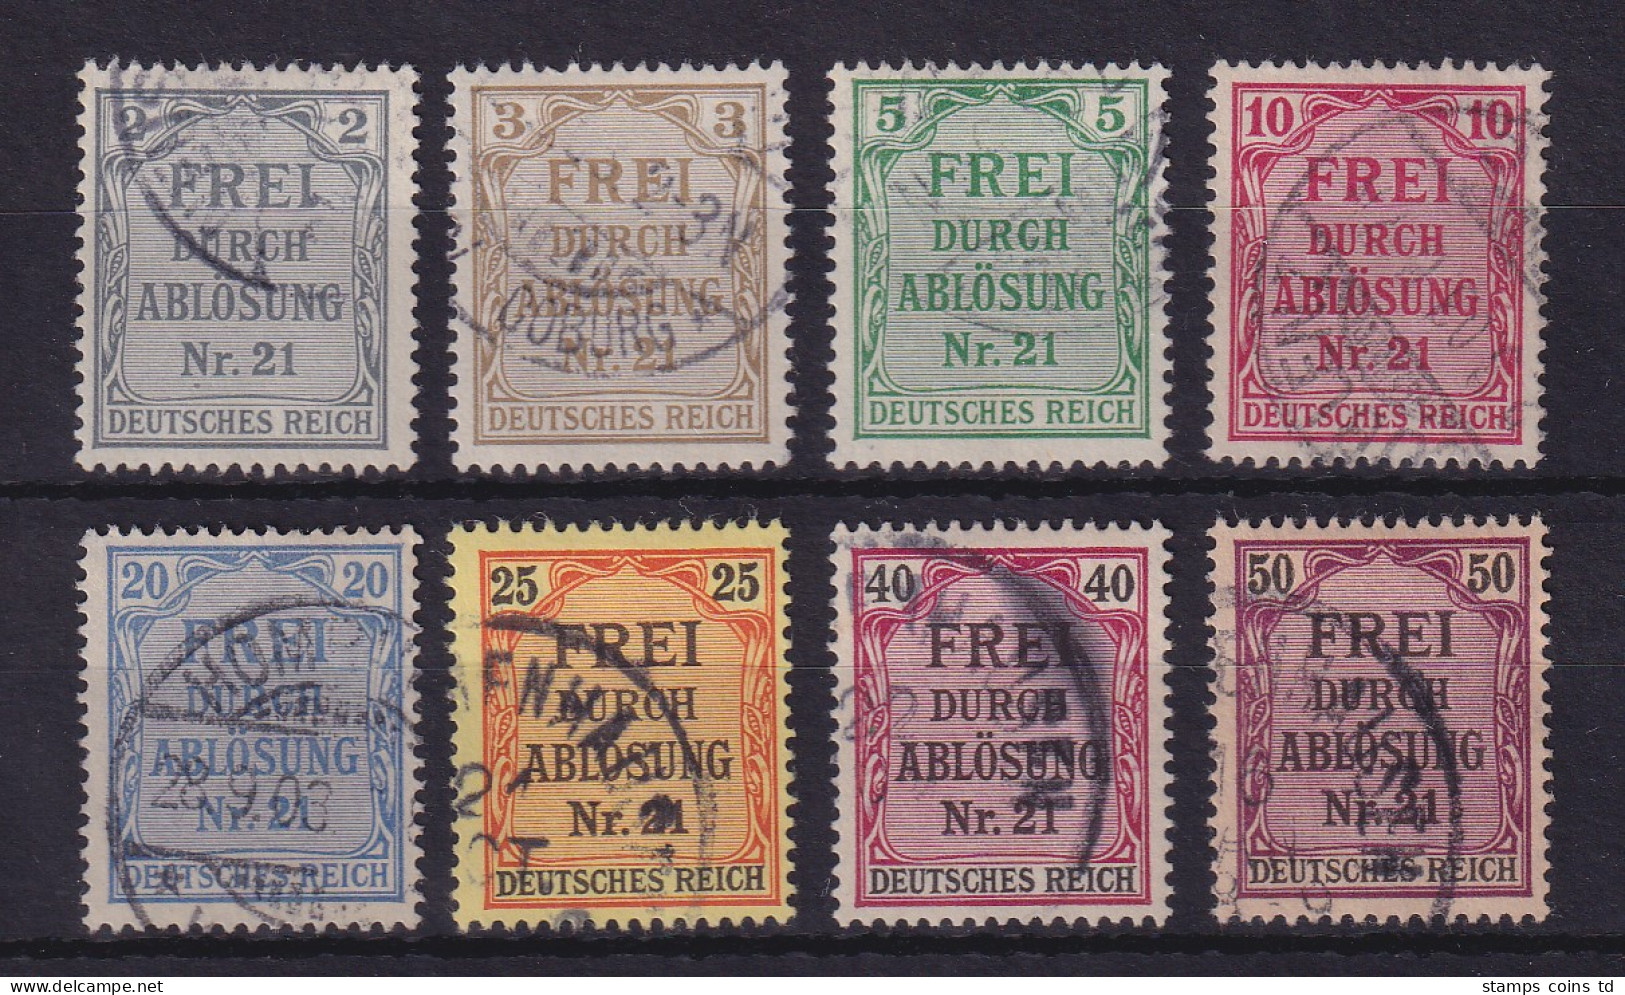 Dt. Reich 1903 Dienstmarken Für Preußen  Mi.-Nr. 1-8 Gestempelt - Dienstmarken